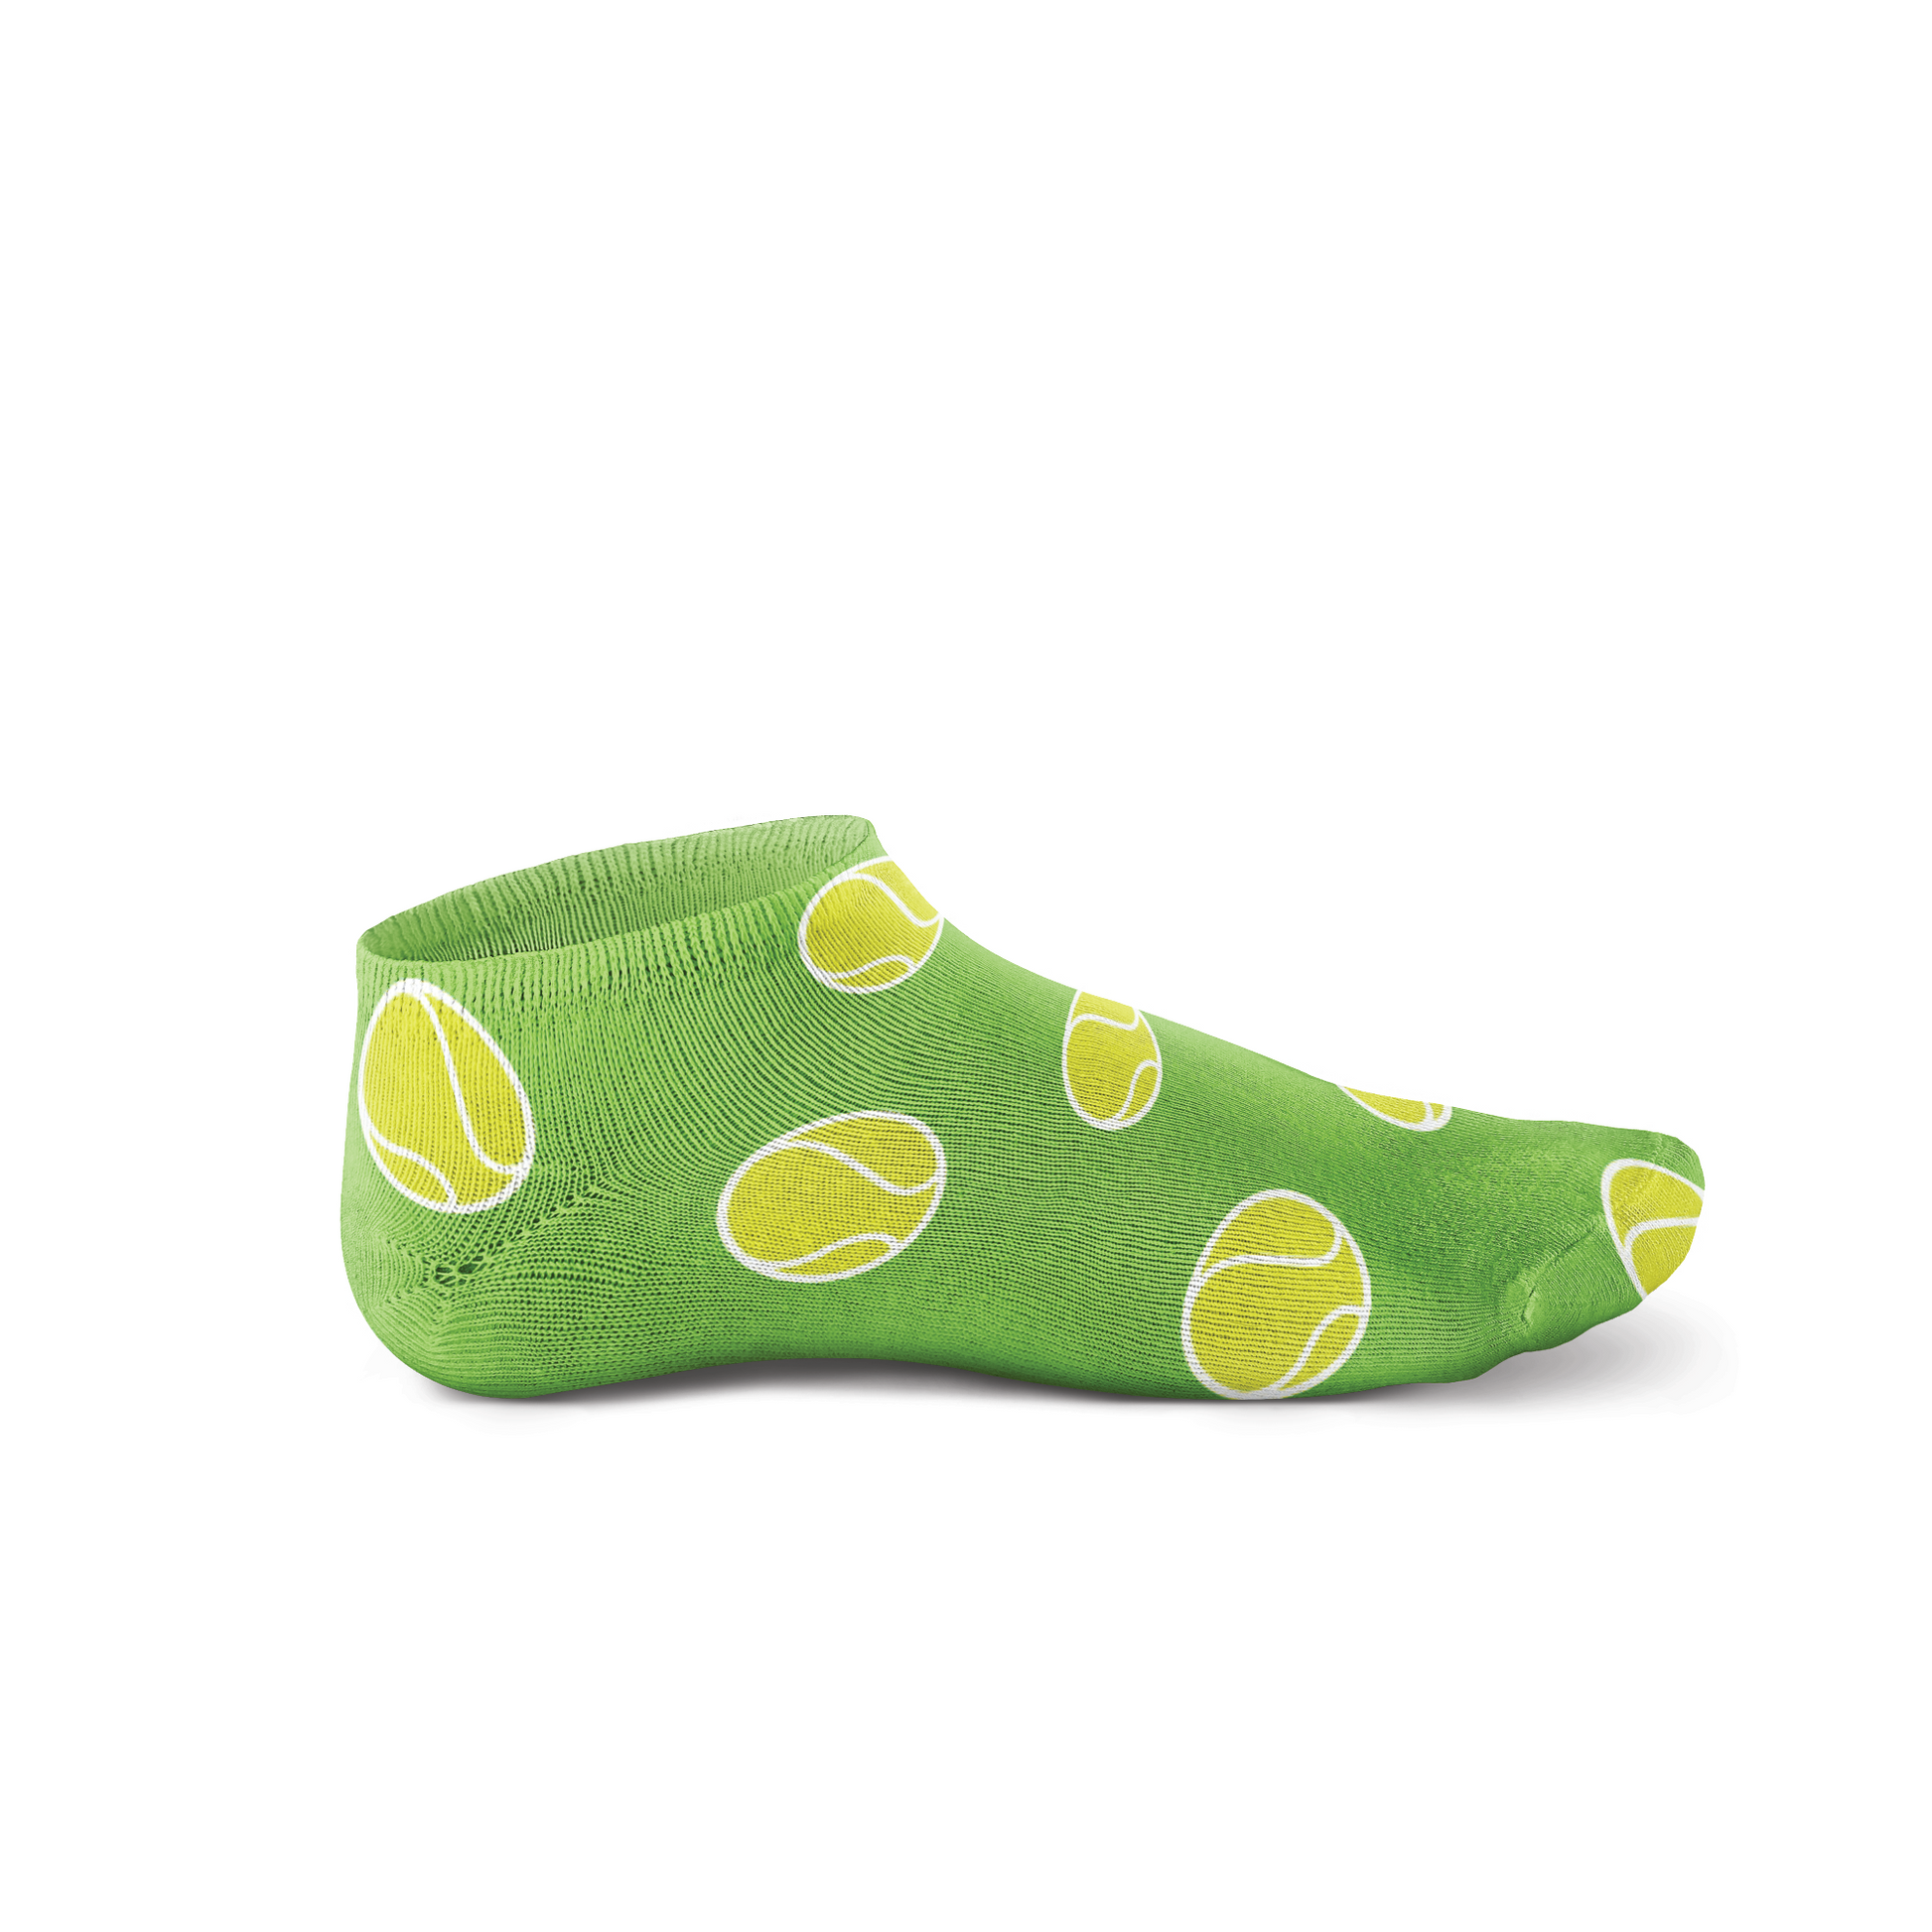 Women's Tennis Socks - Green - Racquet (Racket) Inc Tennis Gifts